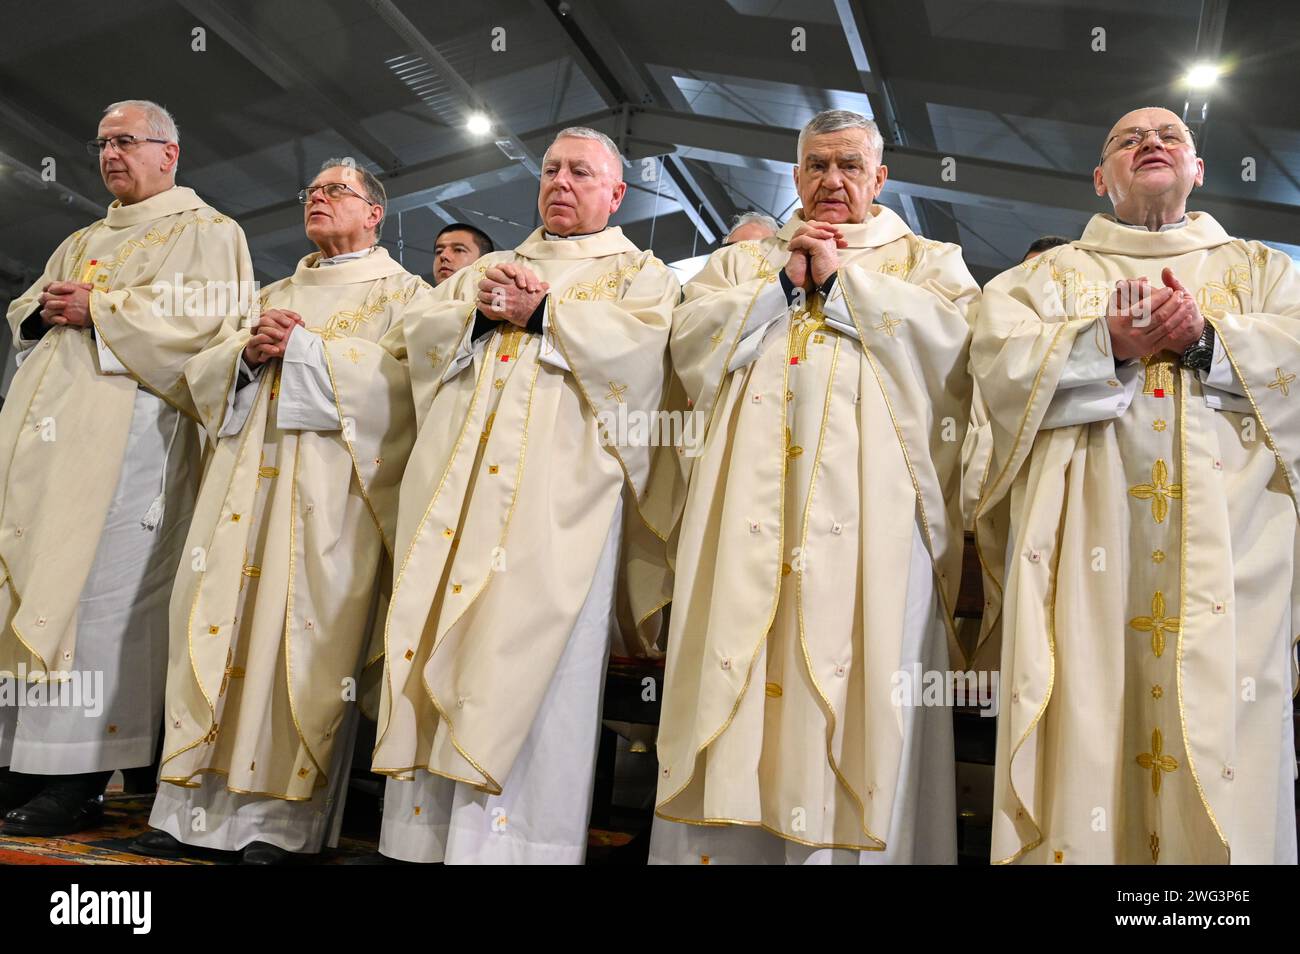 Katholische Priester in liturgischen Gewändern beten. Christliche Priester beten in der Kathedrale. Weihnachtsmesse Um Mitternacht Stockfoto